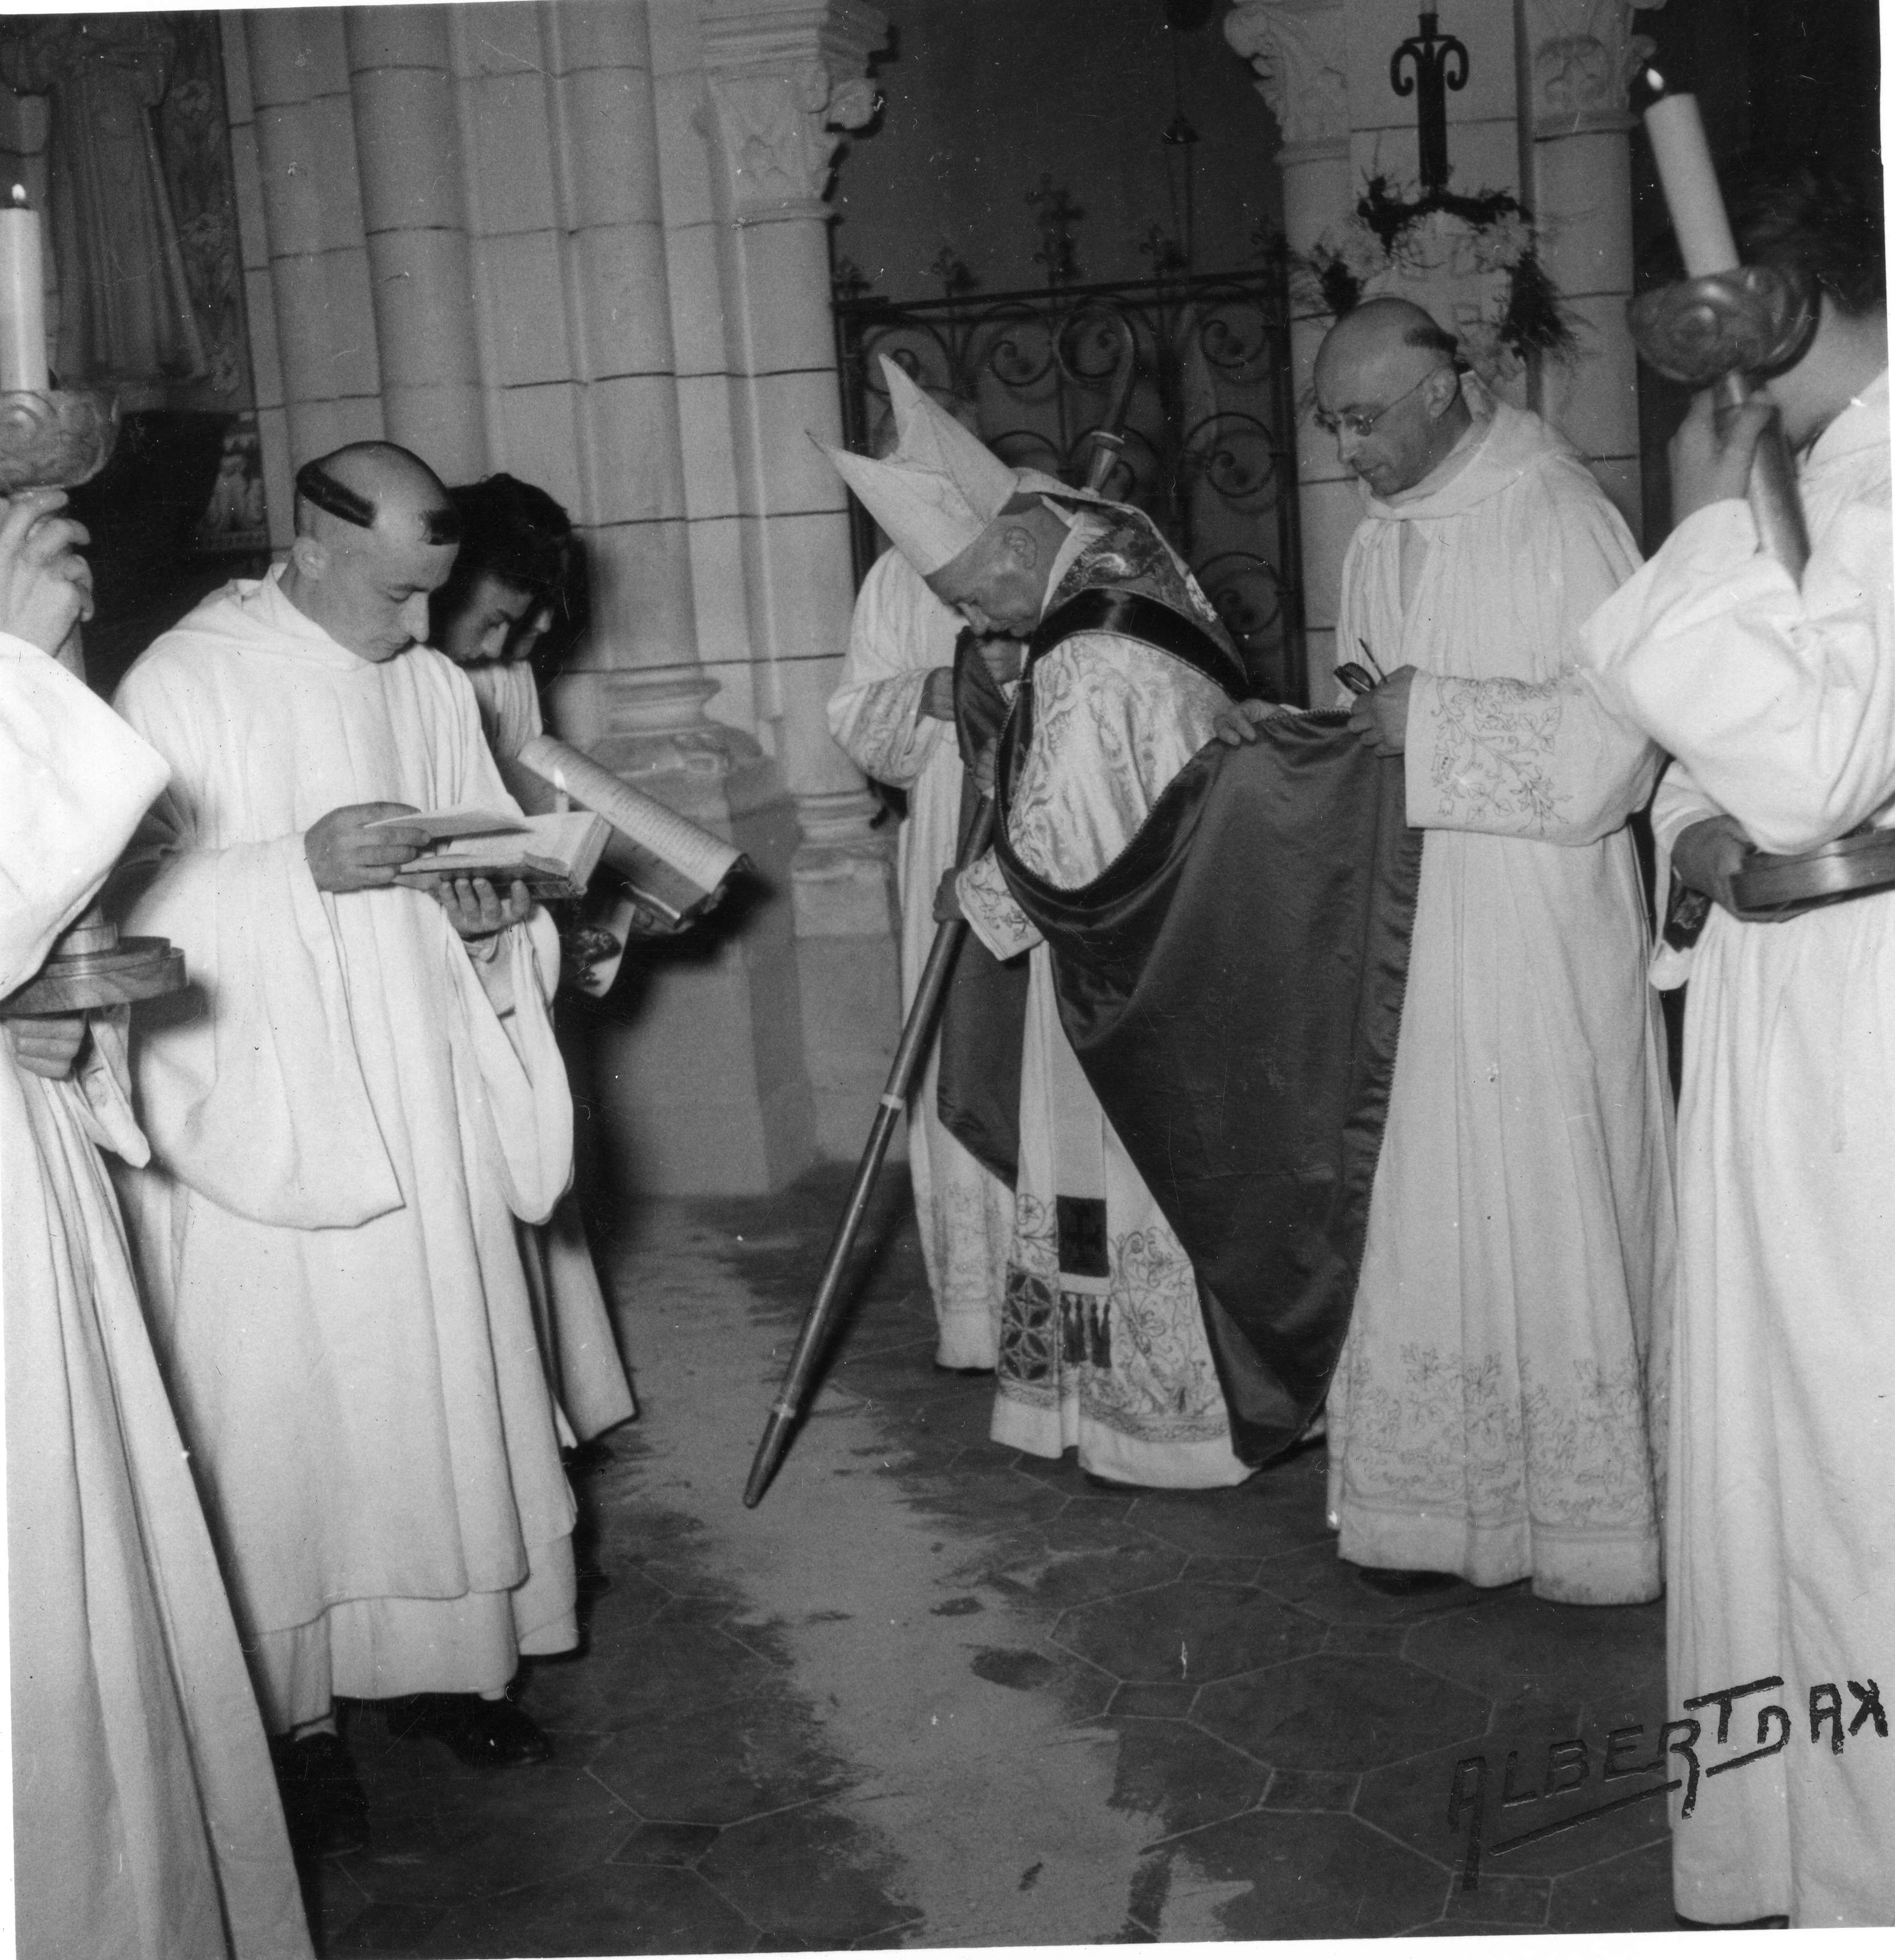 Un évêque entouré de servants trace des lettres sur le sol avec sa crosse.